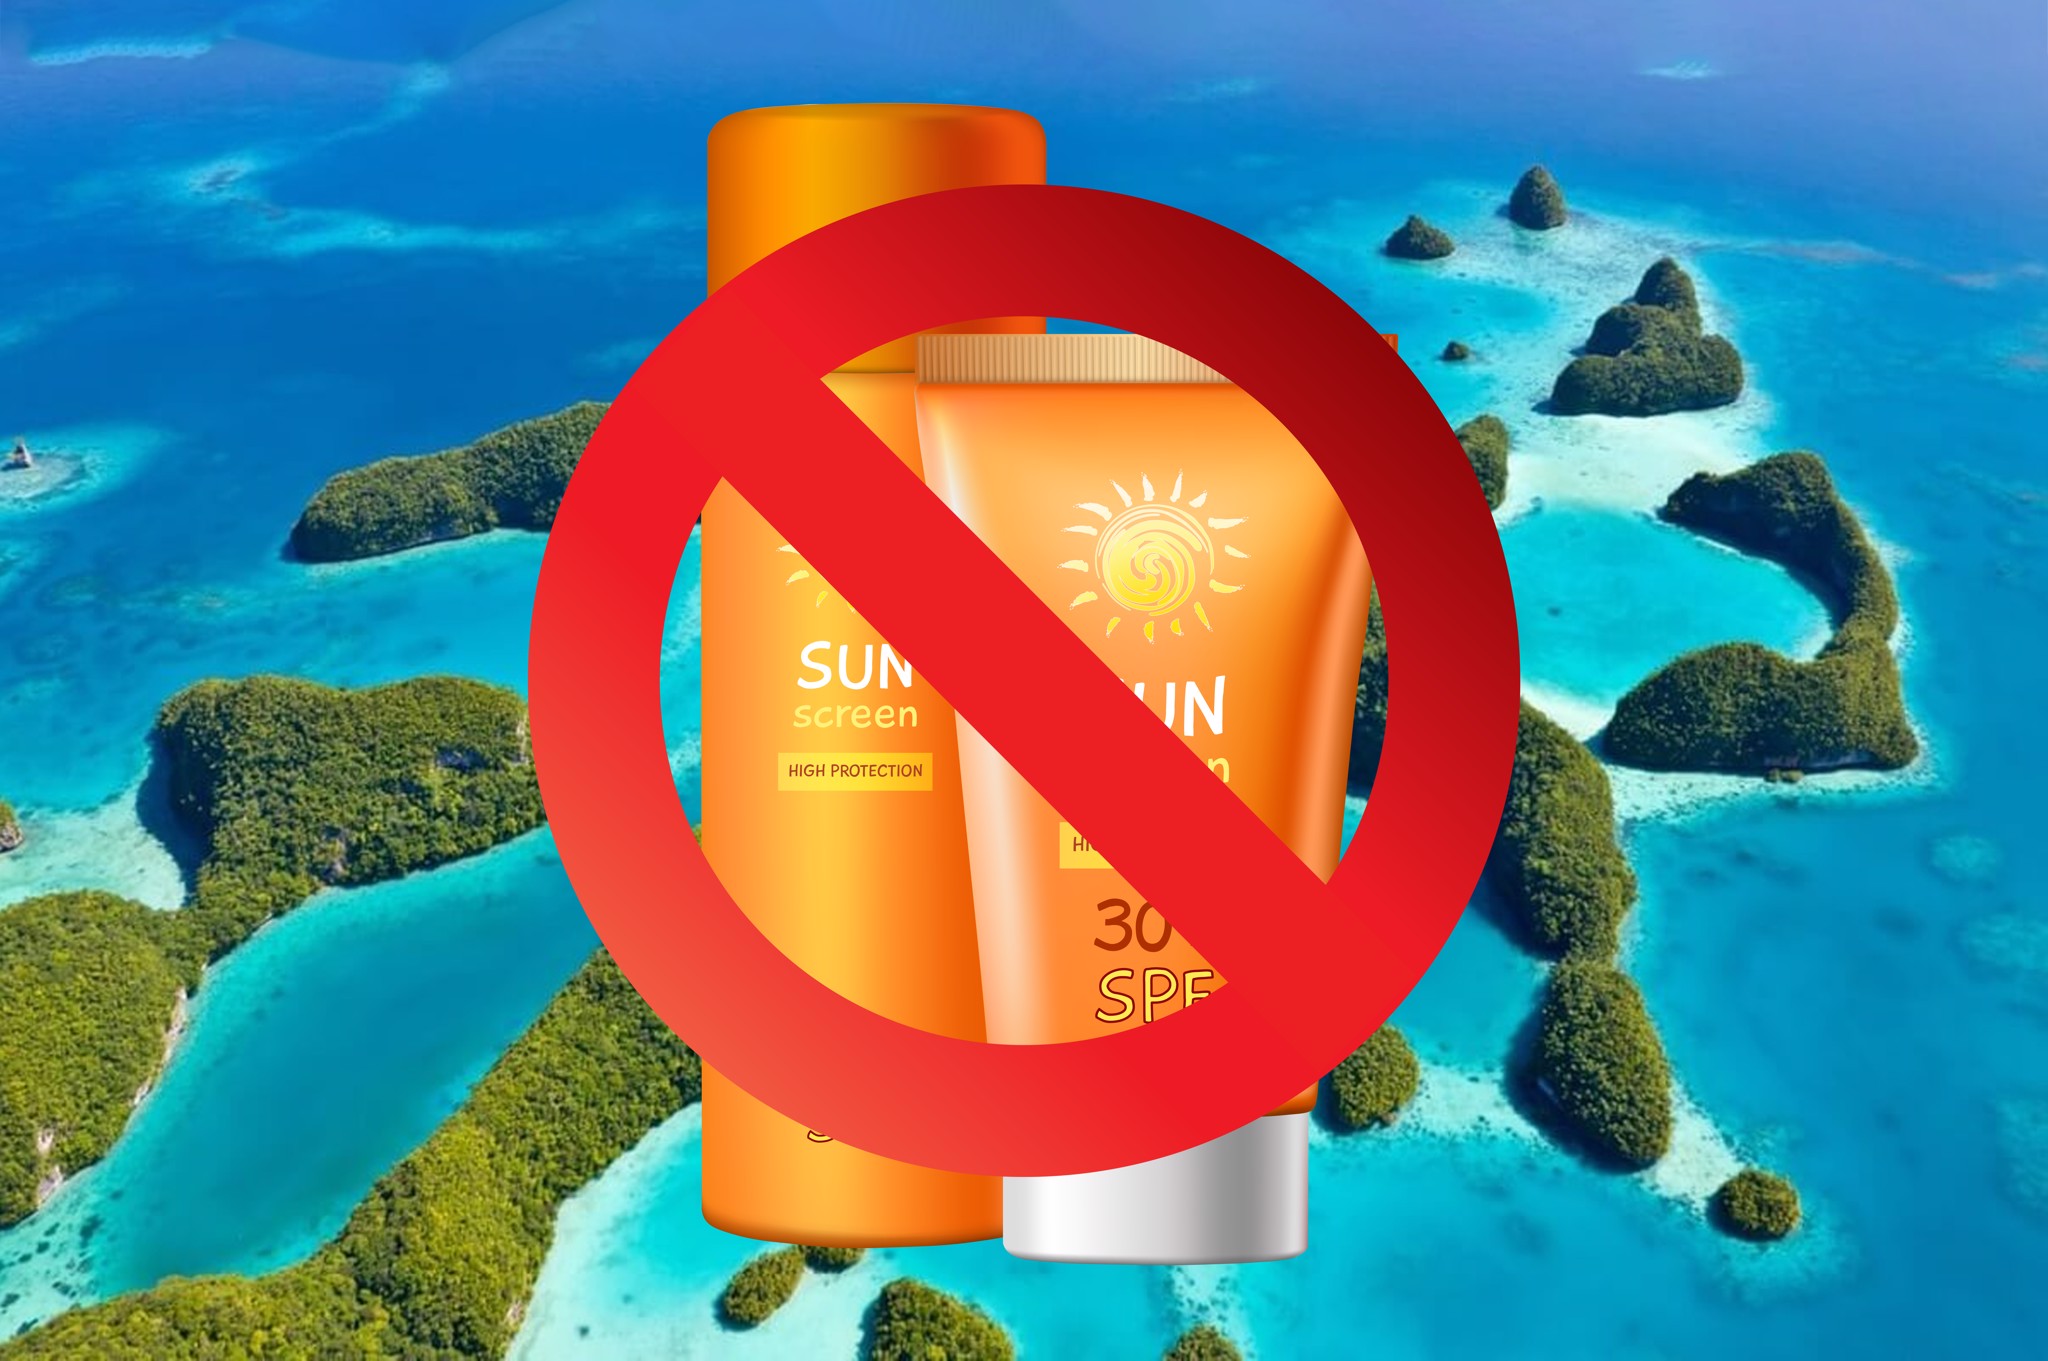 Quốc gia đầu tiên cấm kem chống nắng để bảo vệ san hô